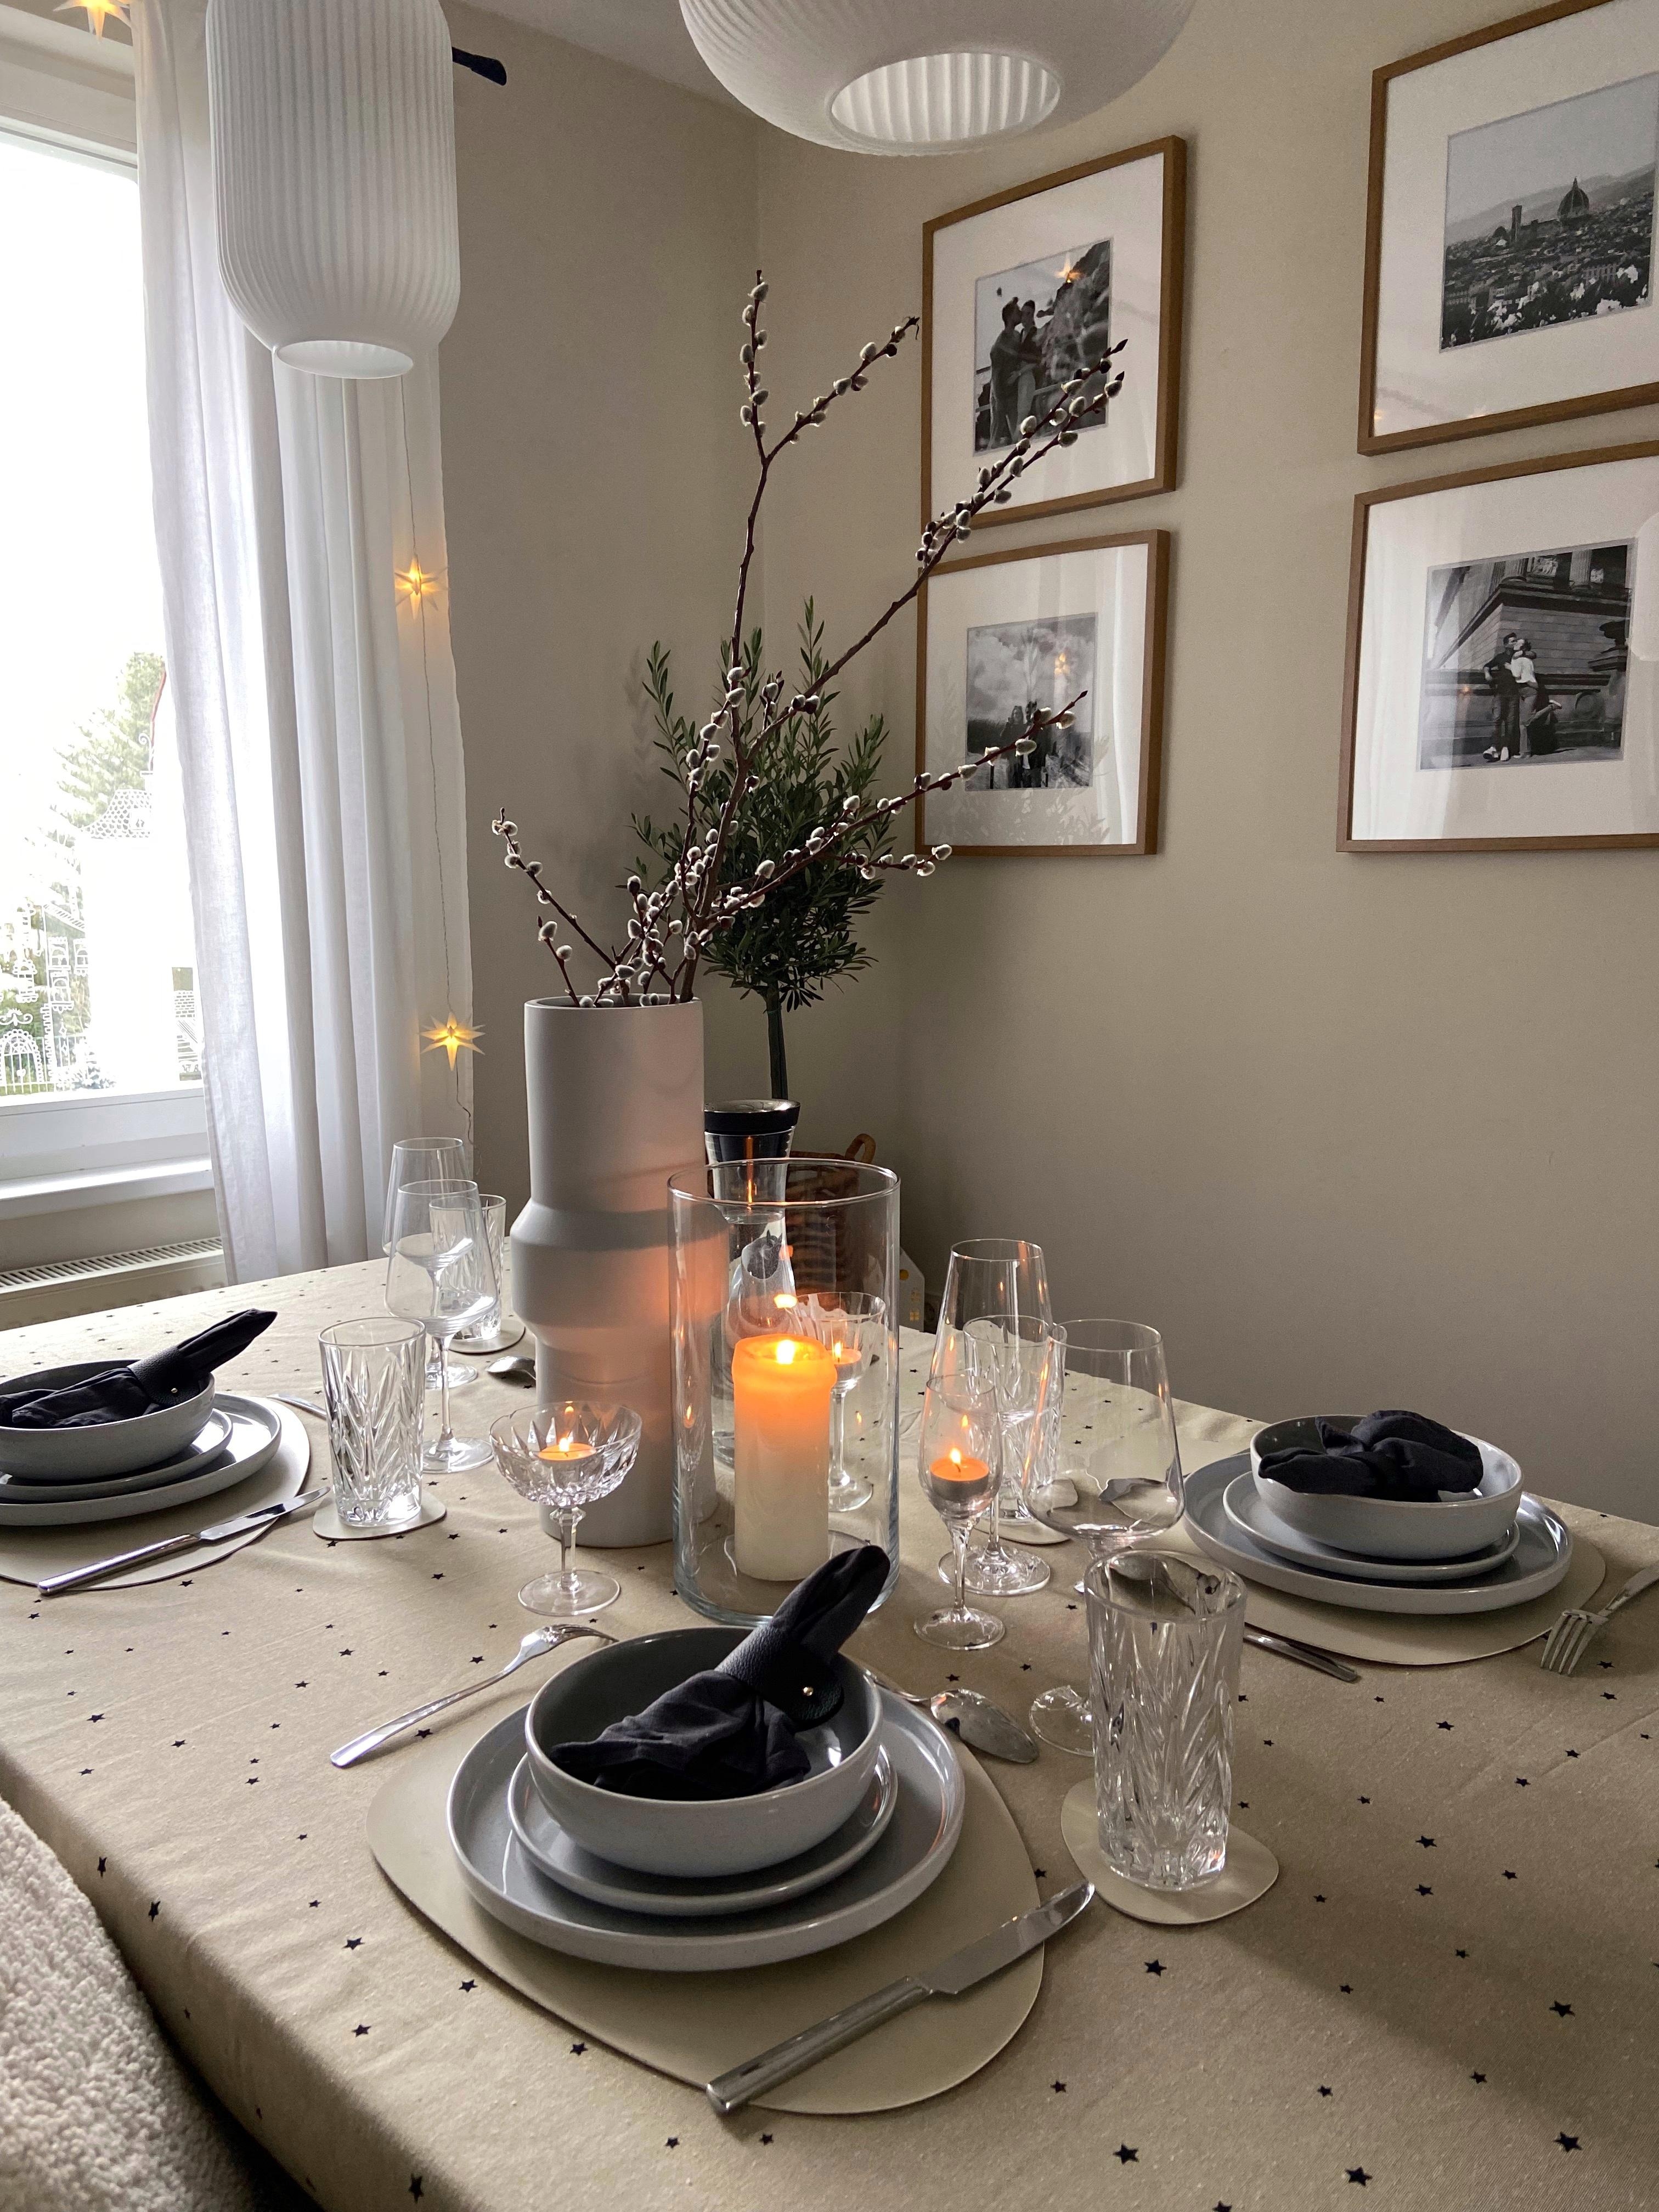 sonntag 🤝🏼
#home#interior#beigeinterior#interiordesign#couchstyle#altbau#christmas#winter#diningroom#dinner#weekend